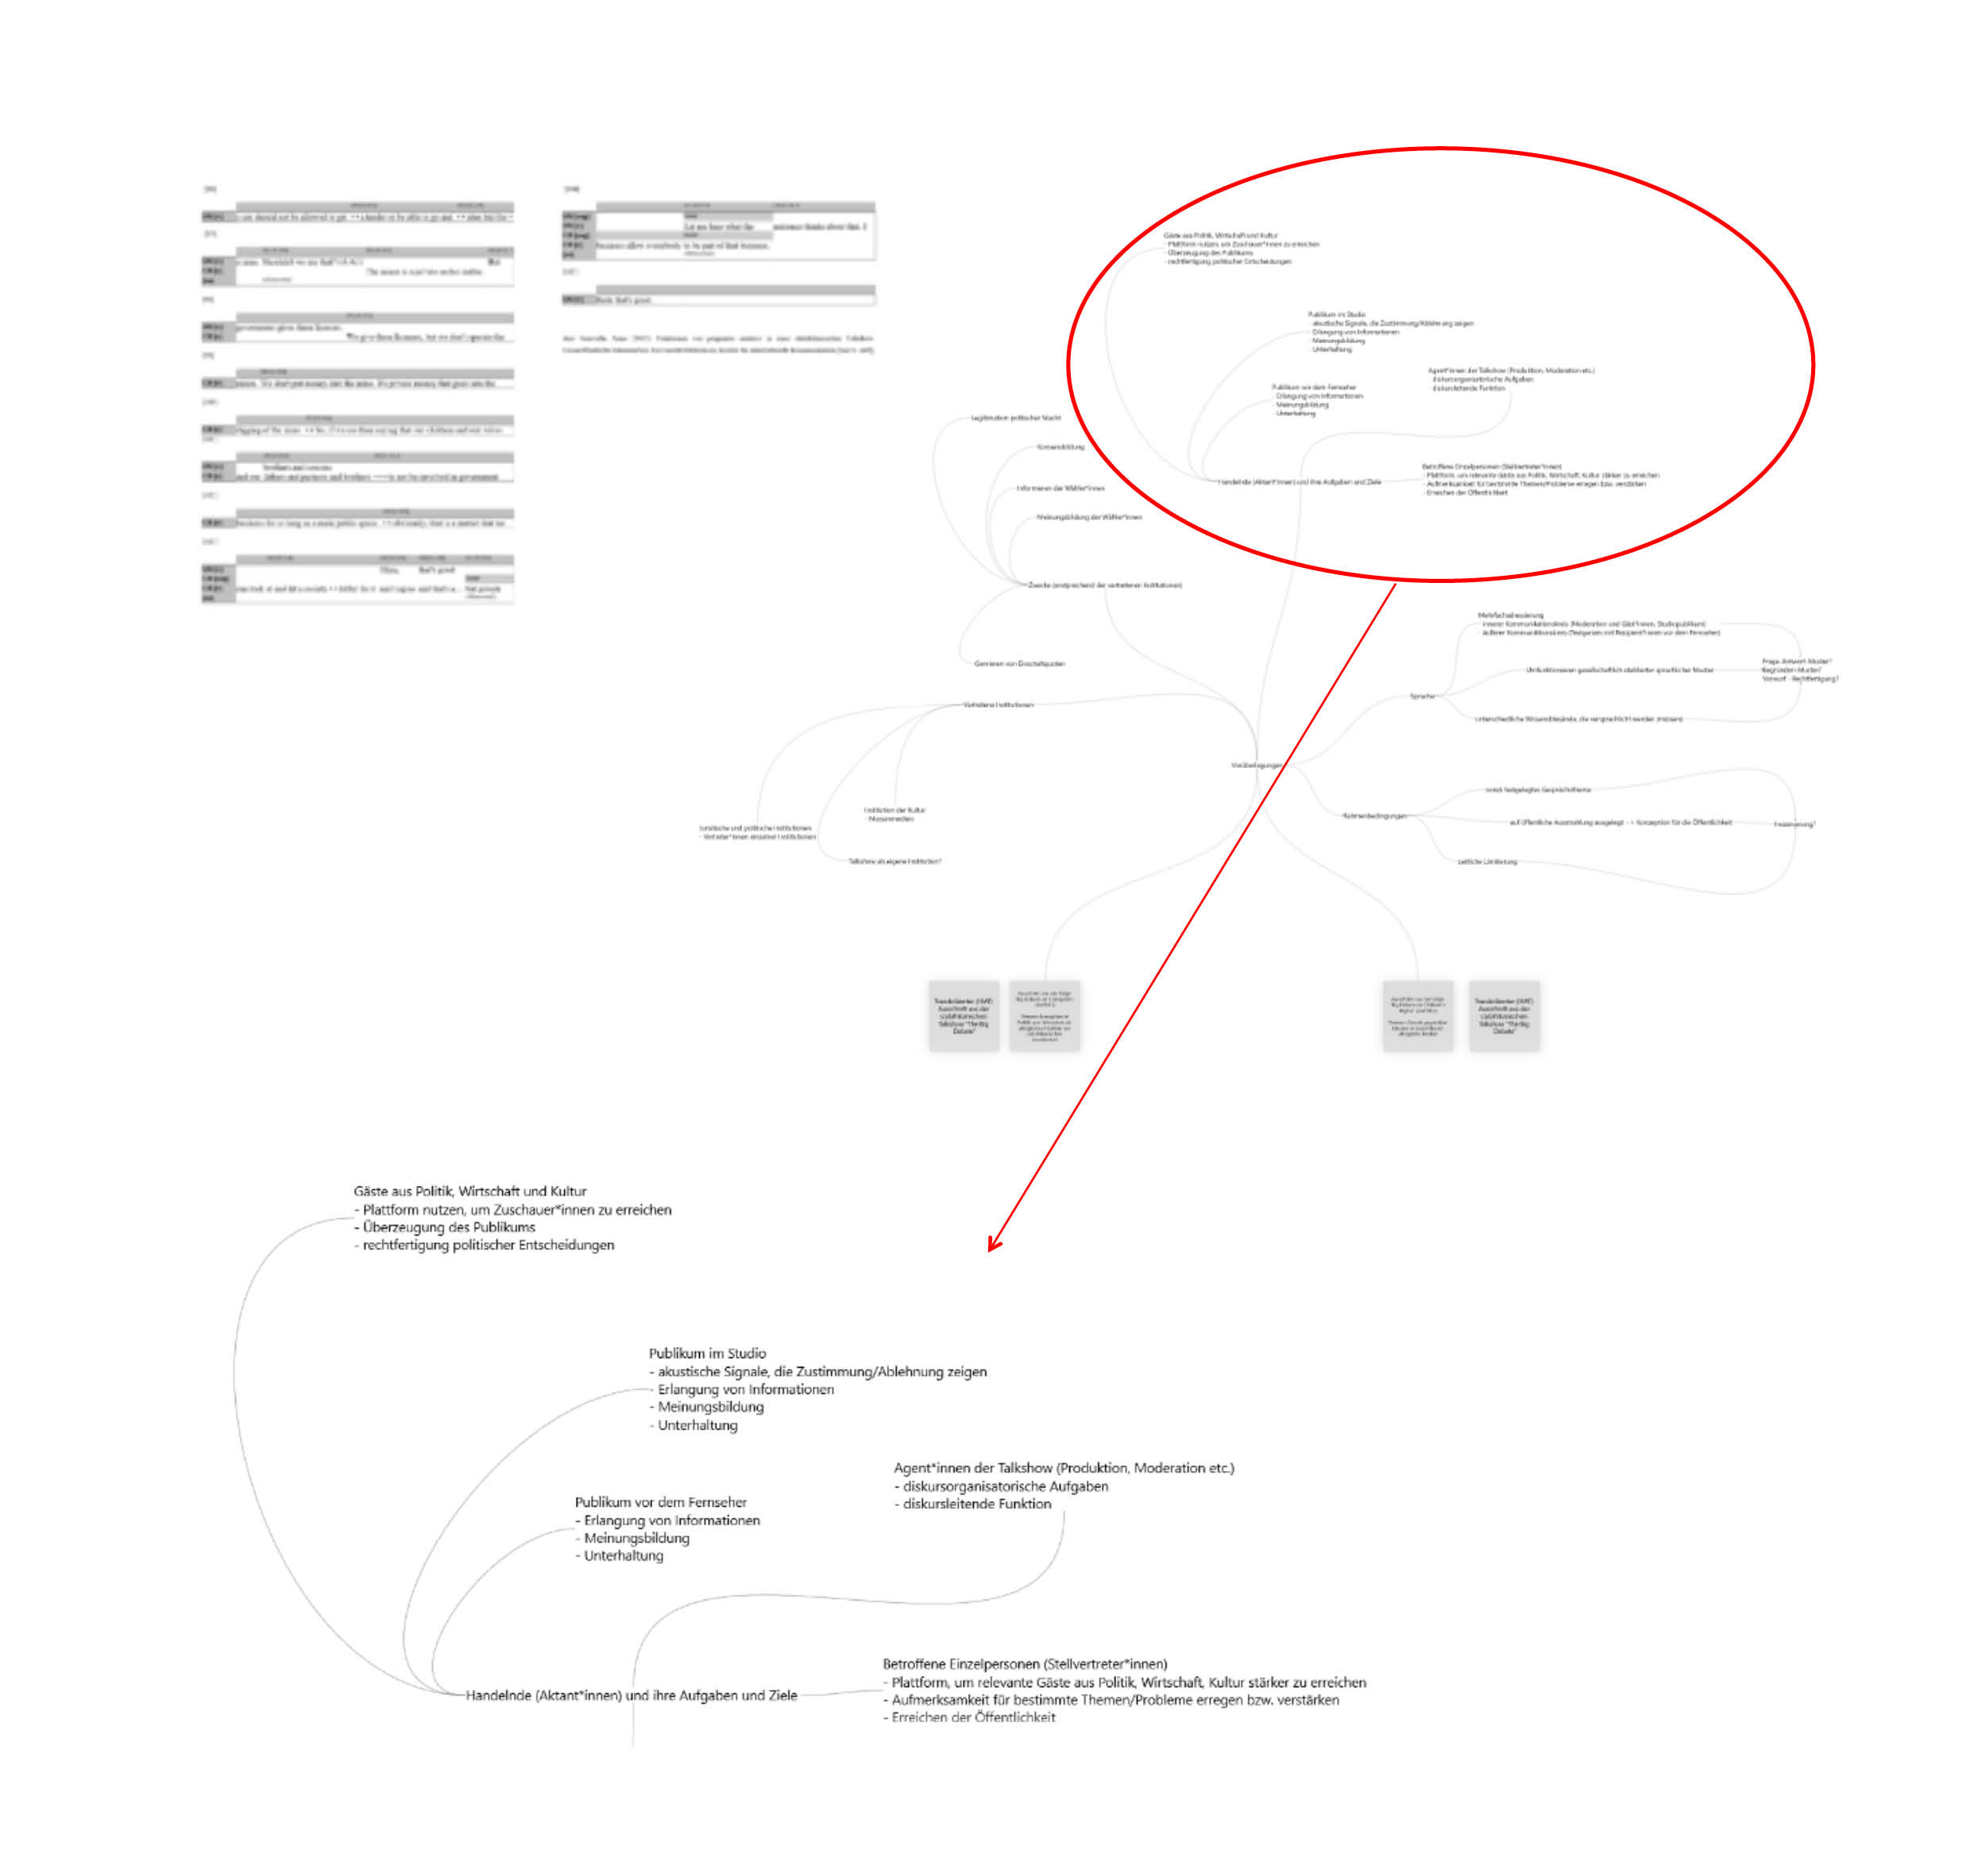 Auf dem Whiteboard sind zahlreiche Textelemente zu erkennen, die durch Linien miteinander verknüpft sind und ein Netz aus Ideen bilden. Ein roter Kreis markiert einen Teil der entstandenen Mindmap. Links ist ein Transkriptausschnitt zu sehen.